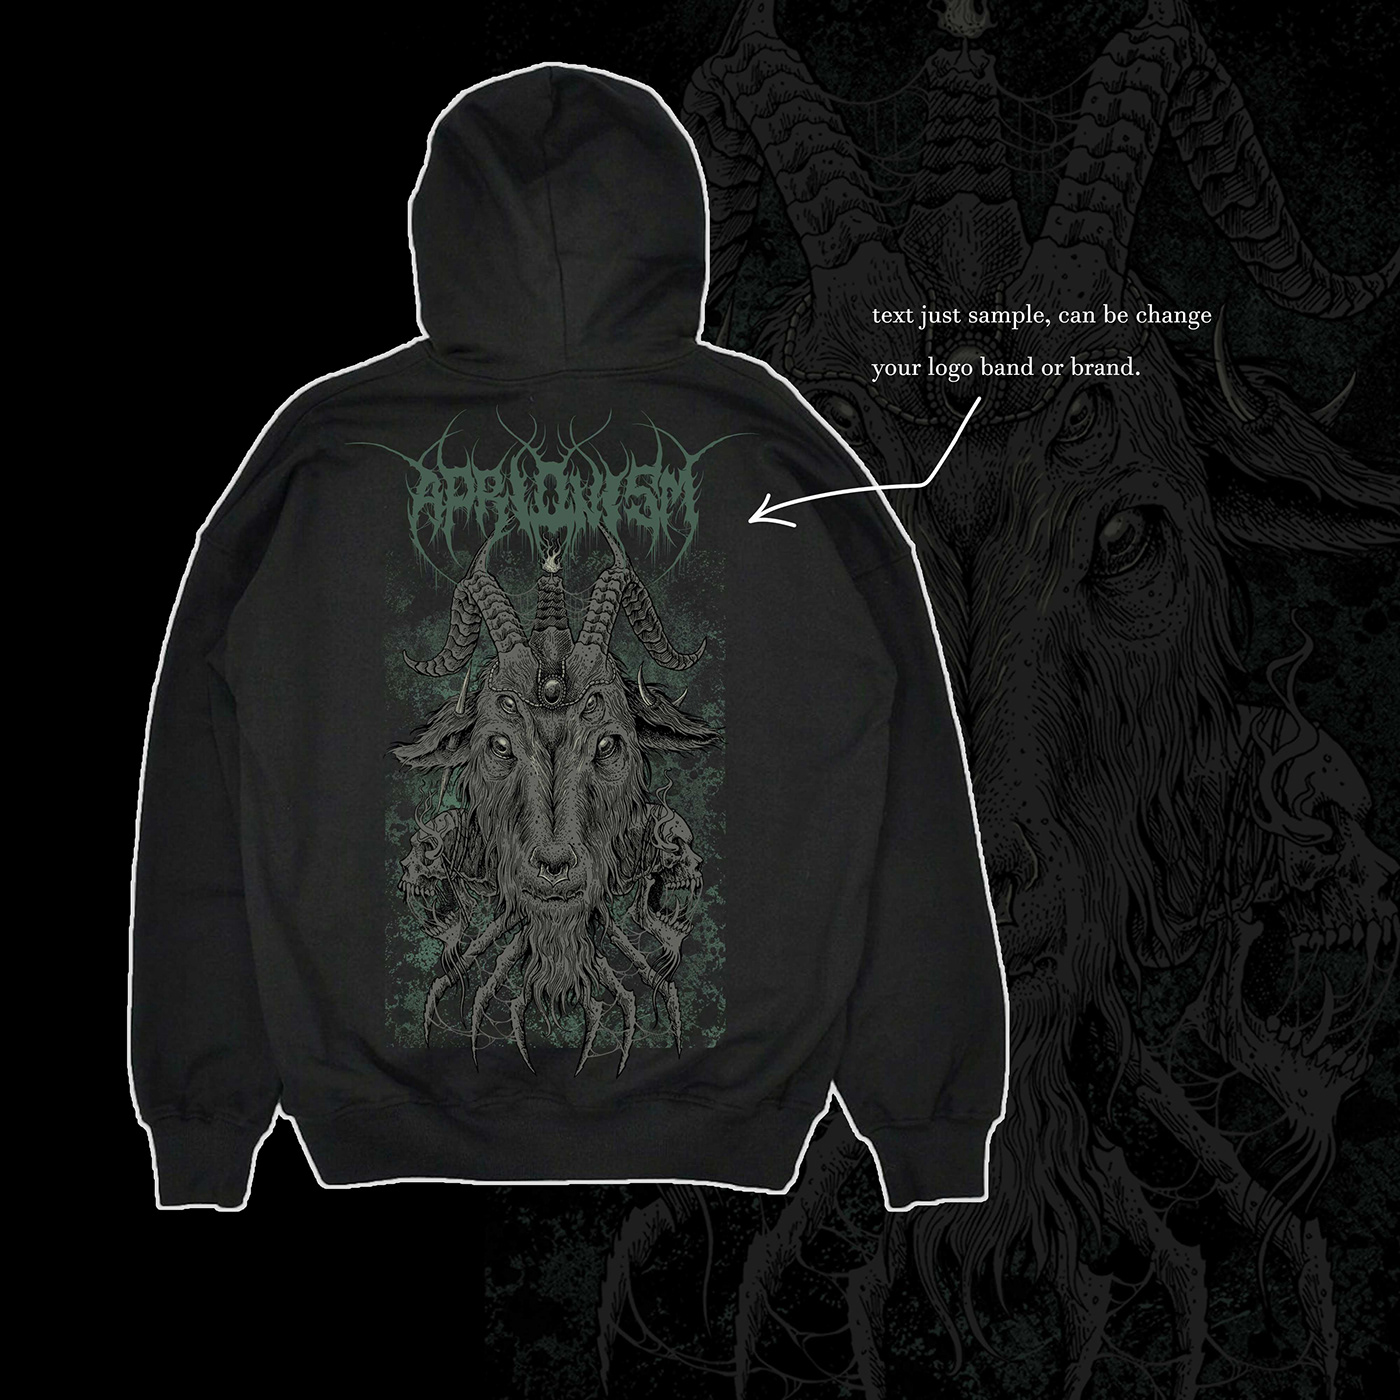 artwork artworkforsale brutal darkart Deathmetal HeavyMetal ILLUSTRATION  merchdesign metalwork tshirtdesign